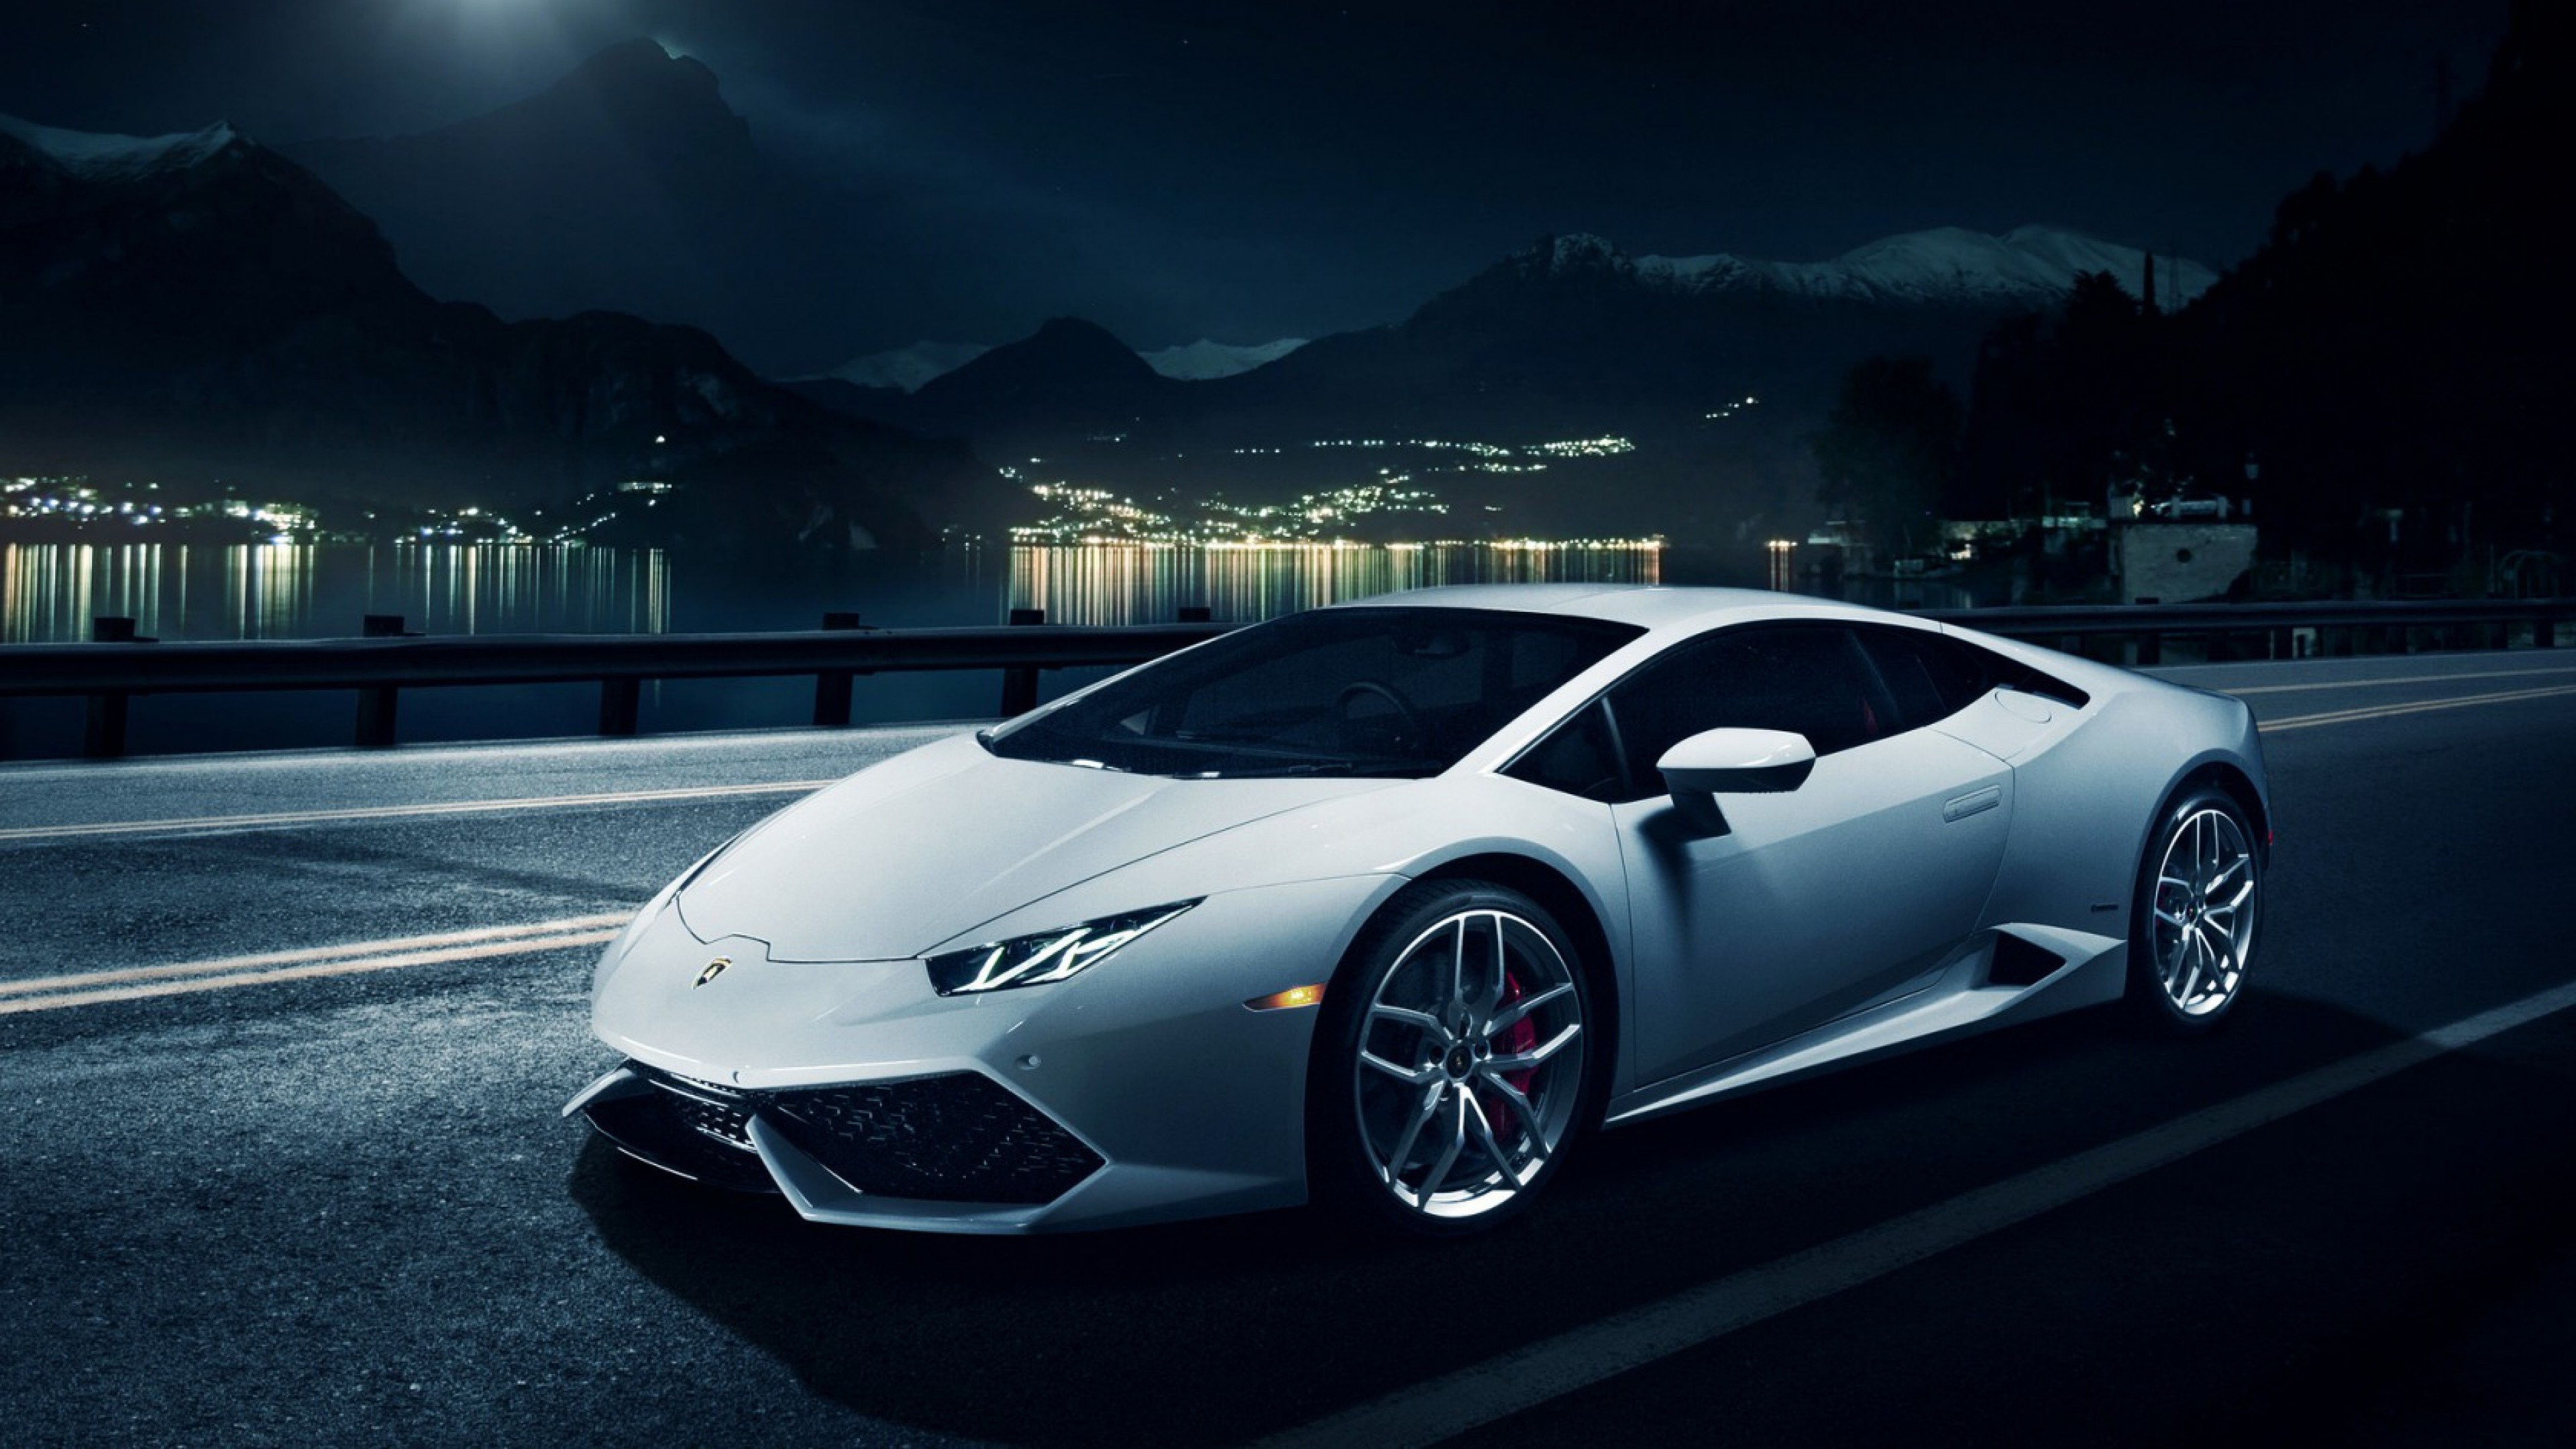 Wallpaper Full HD 1080p Lamborghini New Image